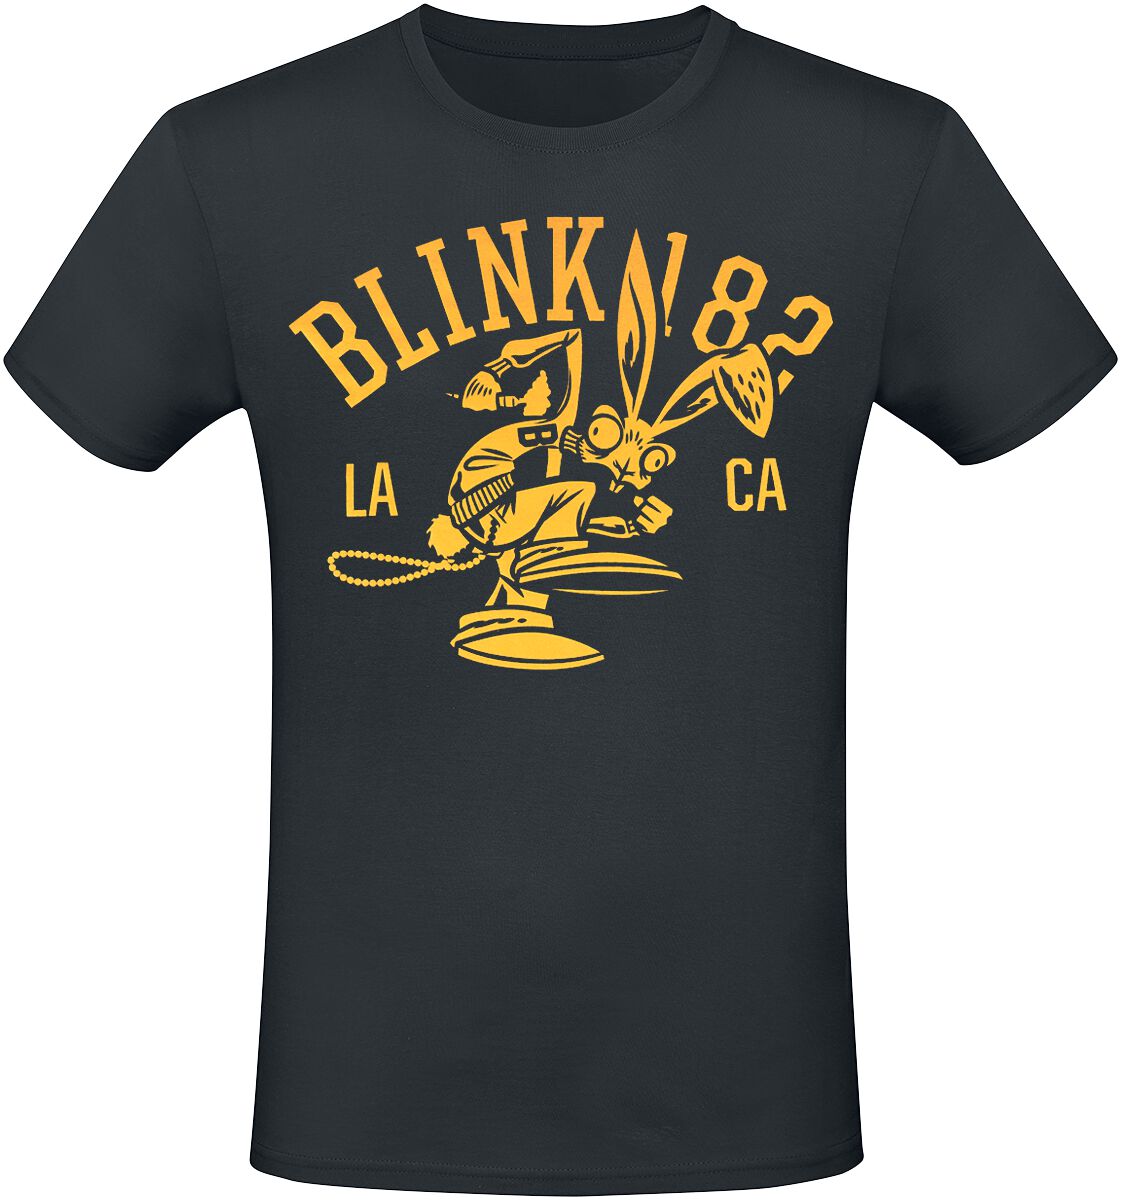 Blink-182 T-Shirt - Mascot - S bis 3XL - für Männer - Größe XXL - schwarz  - Lizenziertes Merchandise!